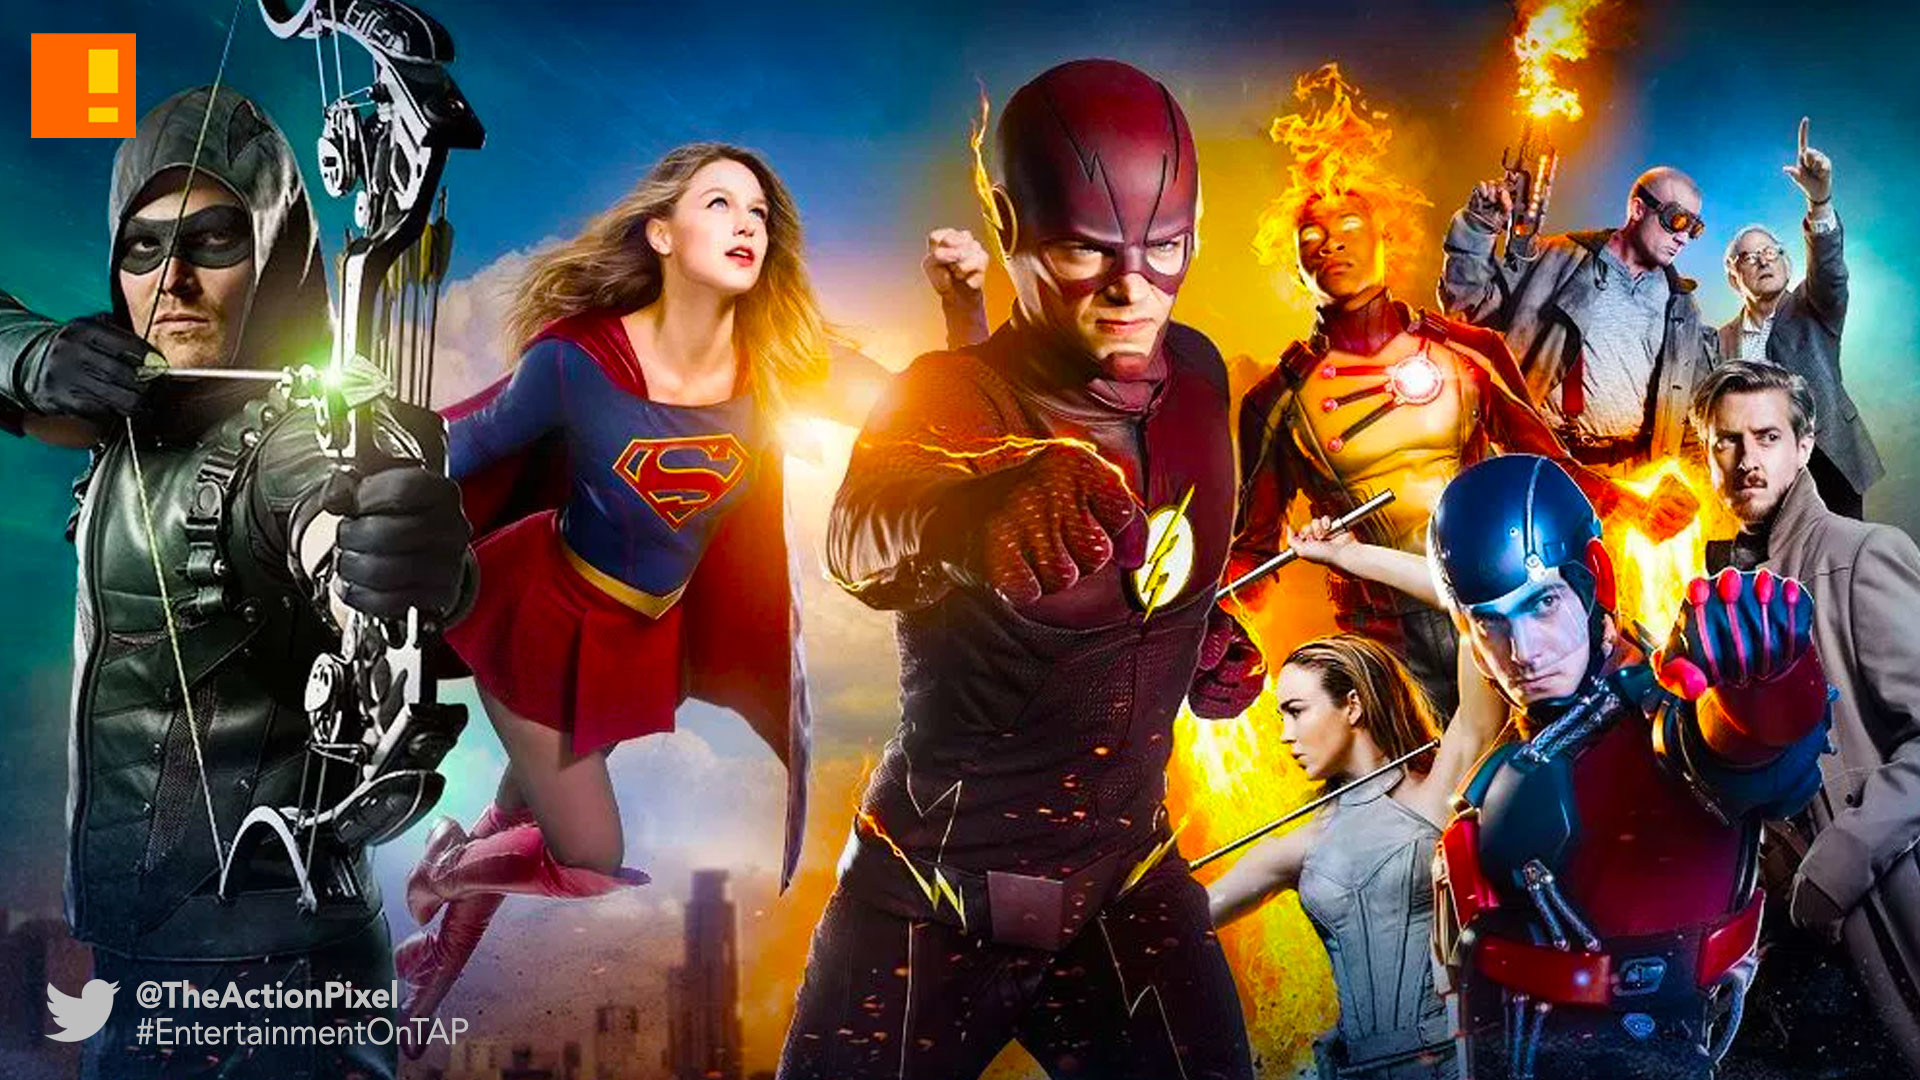 1920x1080 cw network, dc comics, supergirl, the flash, arrow, legends of tomorrow